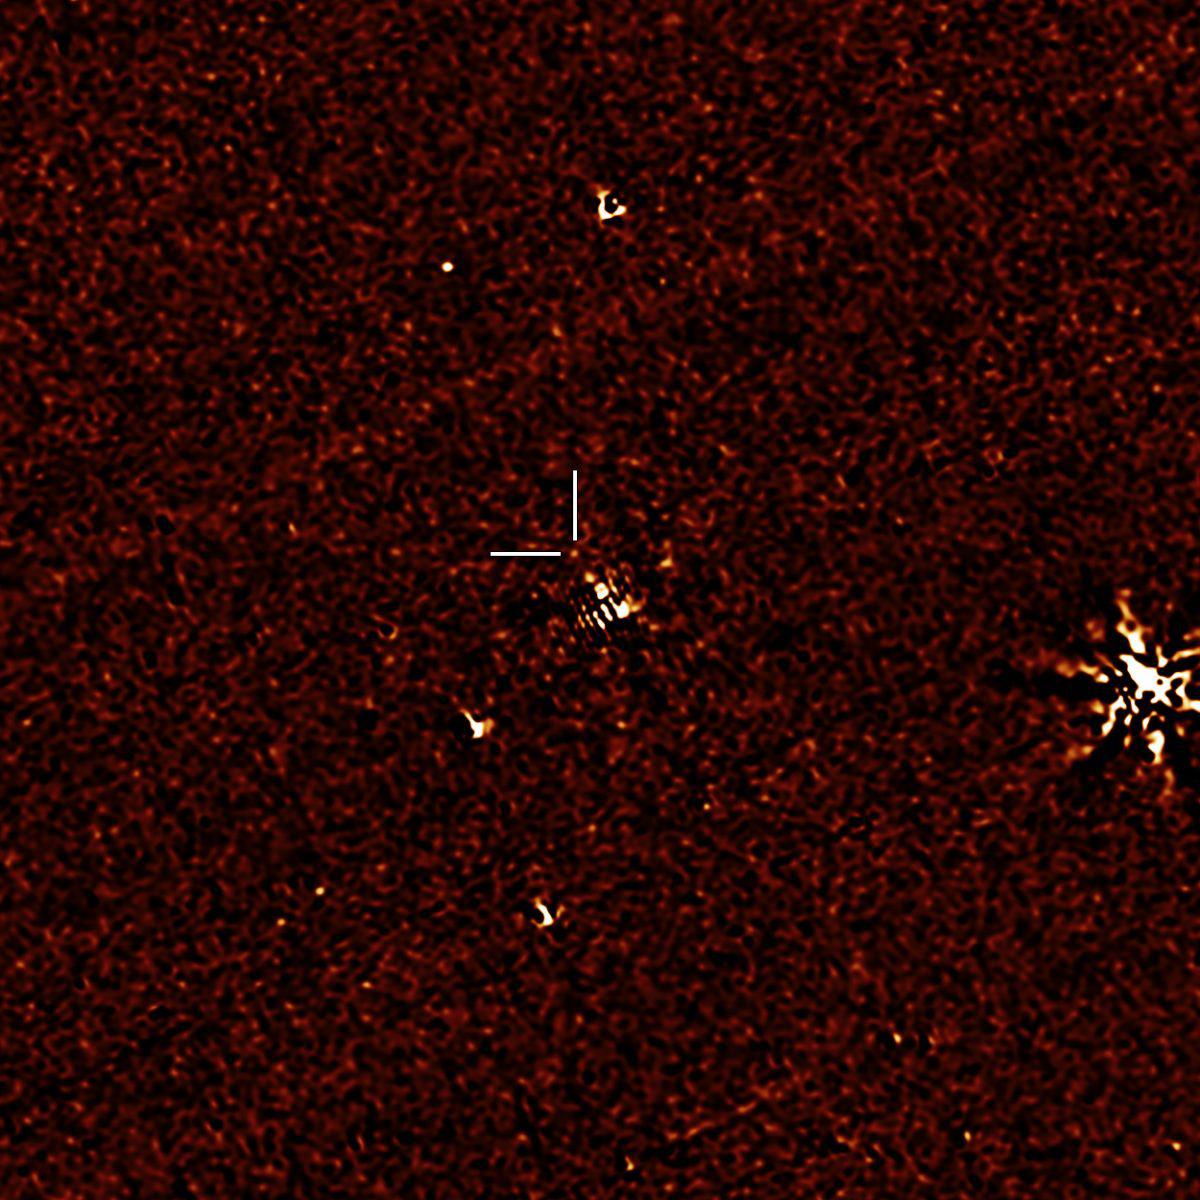 spitzer neutron star merger